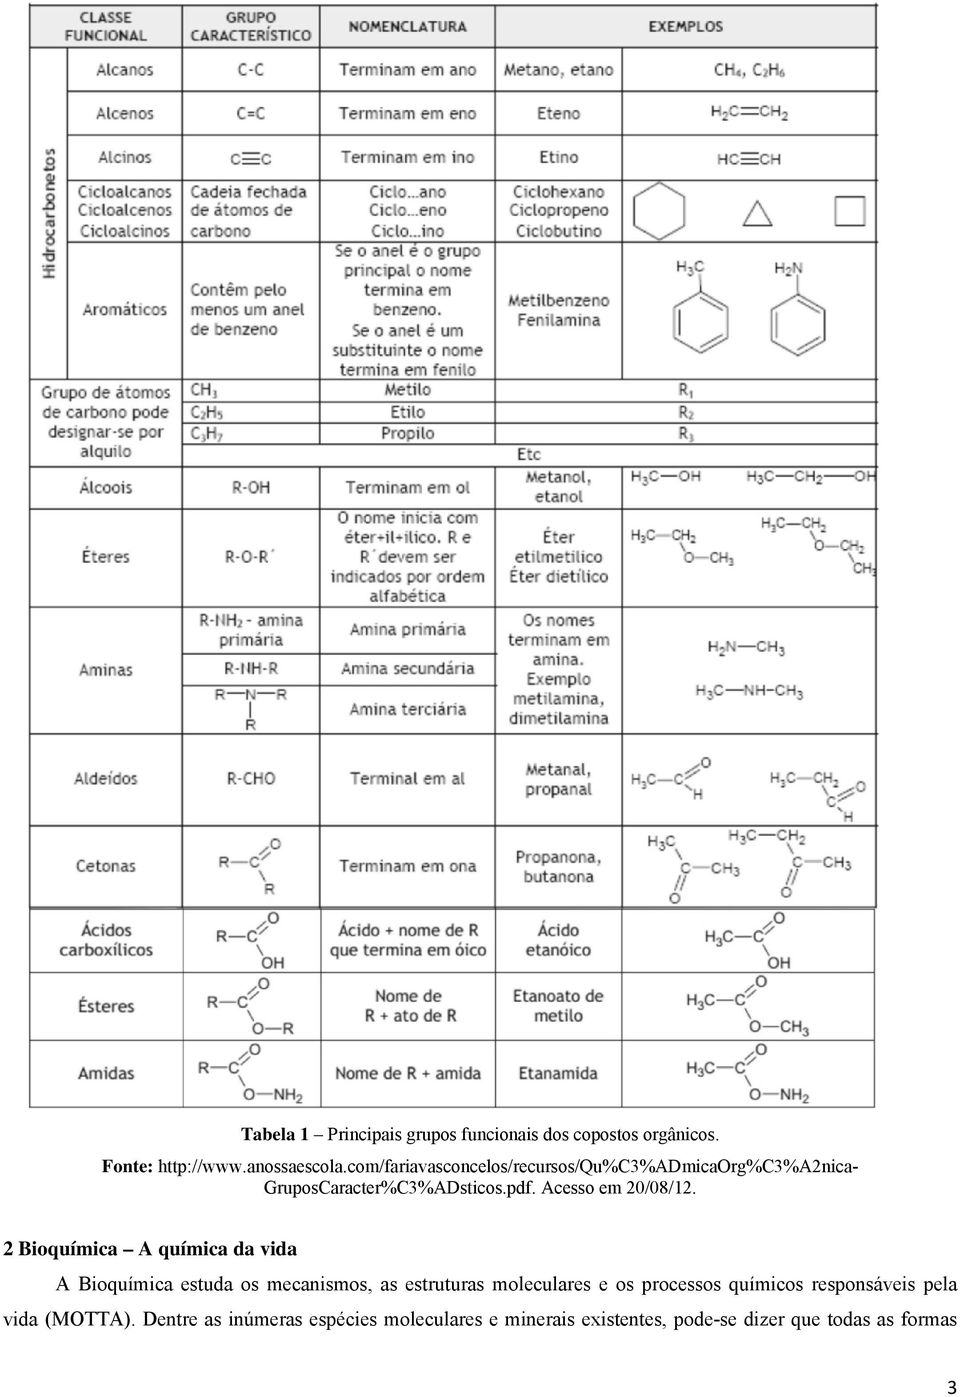 2 Bioquímica A química da vida A Bioquímica estuda os mecanismos, as estruturas moleculares e os processos